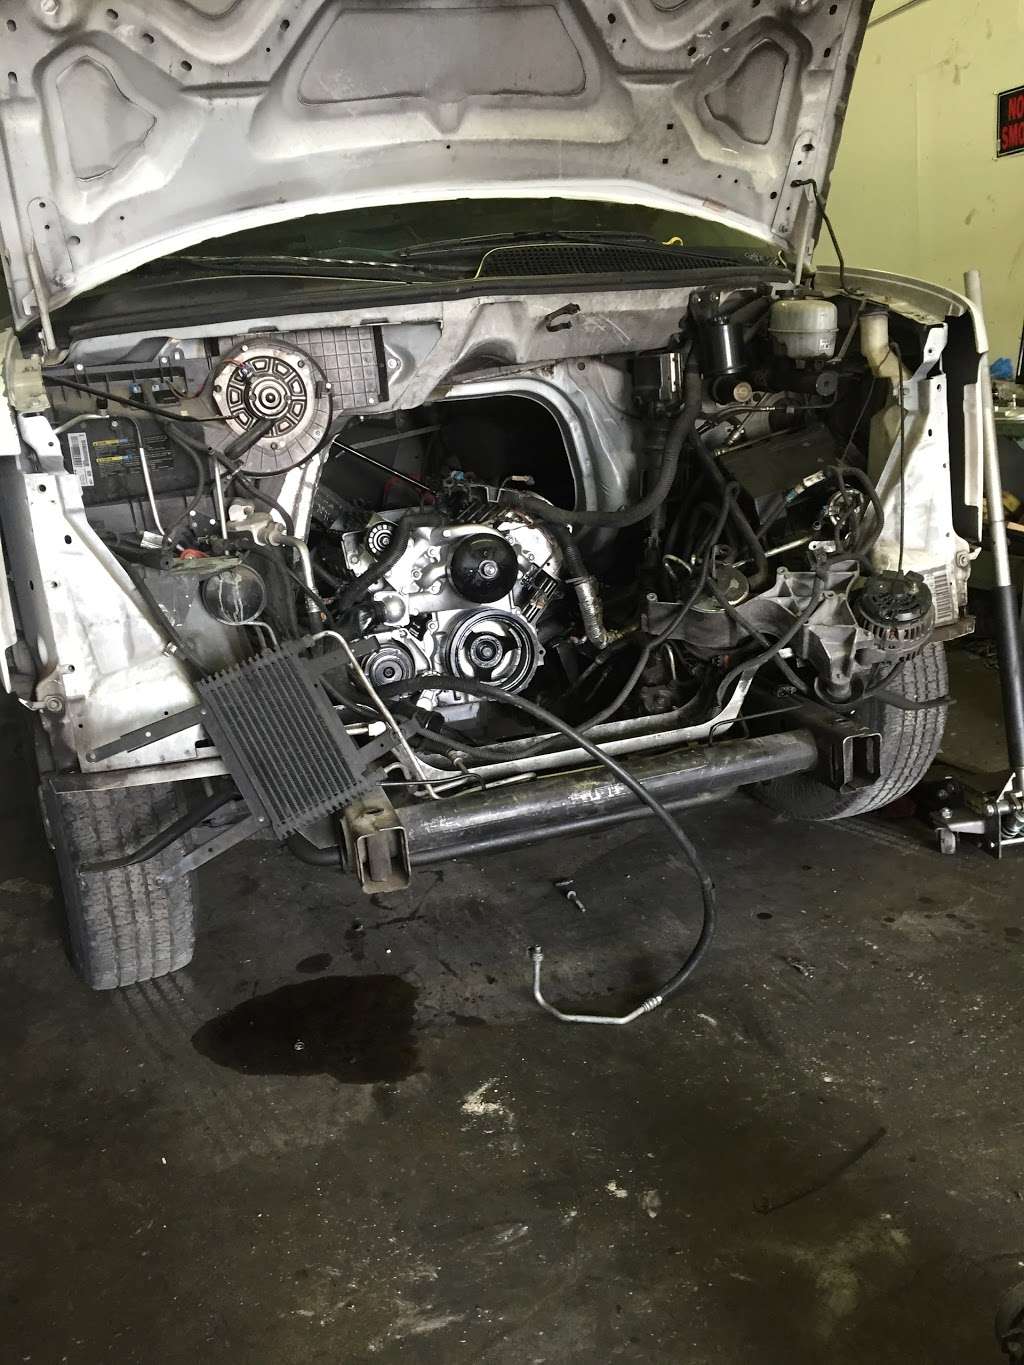 Done Right Auto Repairs | 5115 Dean Martin Dr #511, Las Vegas, NV 89118, USA | Phone: (702) 891-8911